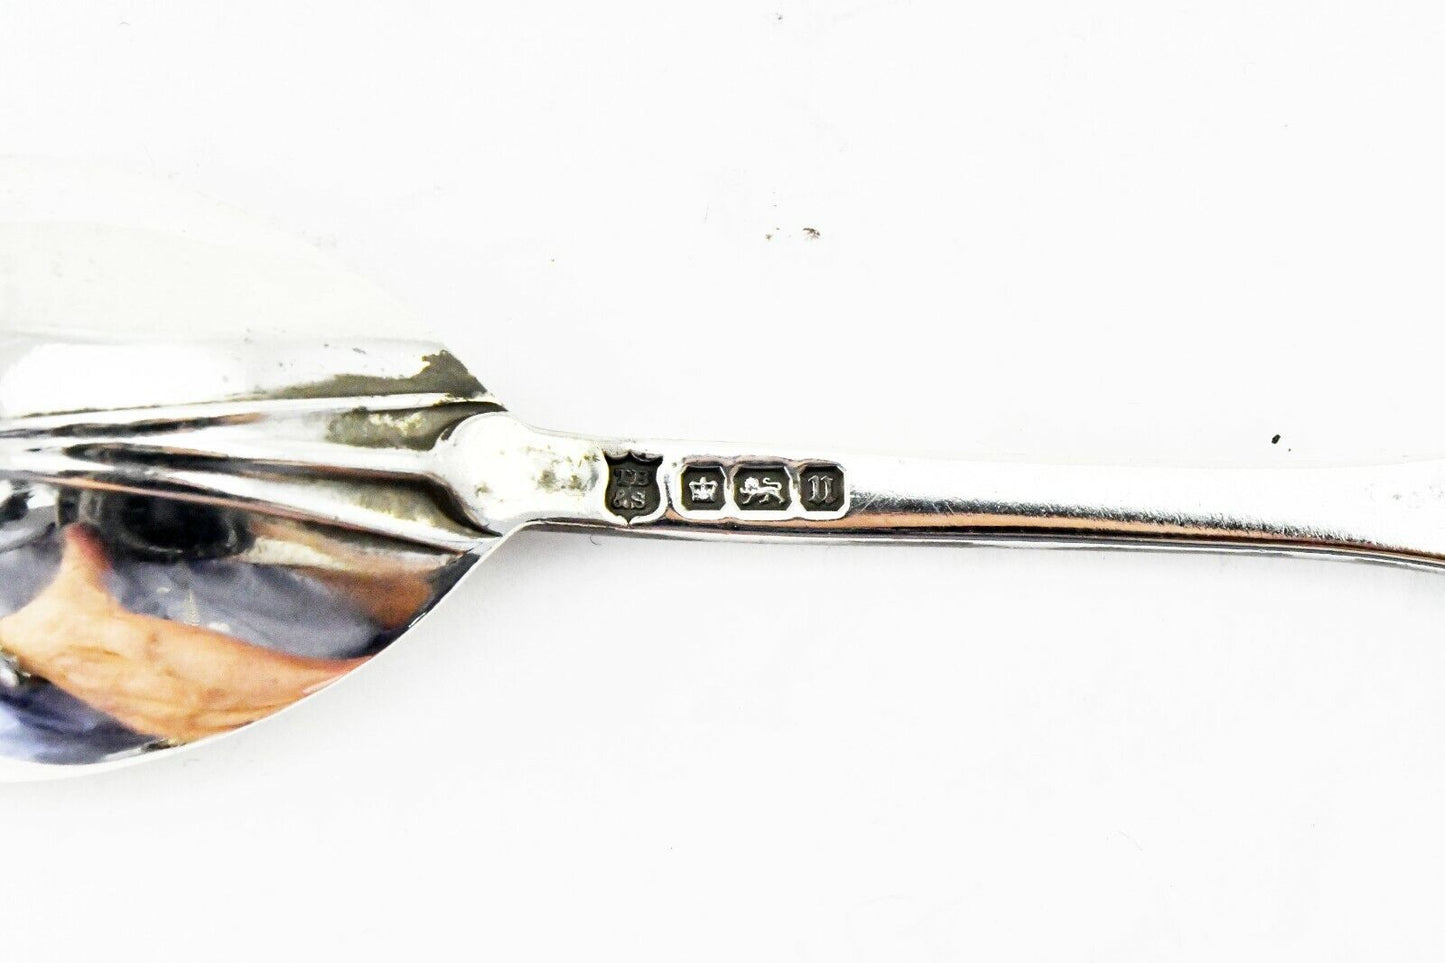 Thomas Bradbury & Sons Sheffield England Sterling Silver 4 3/8" Baby Spoon .53oz